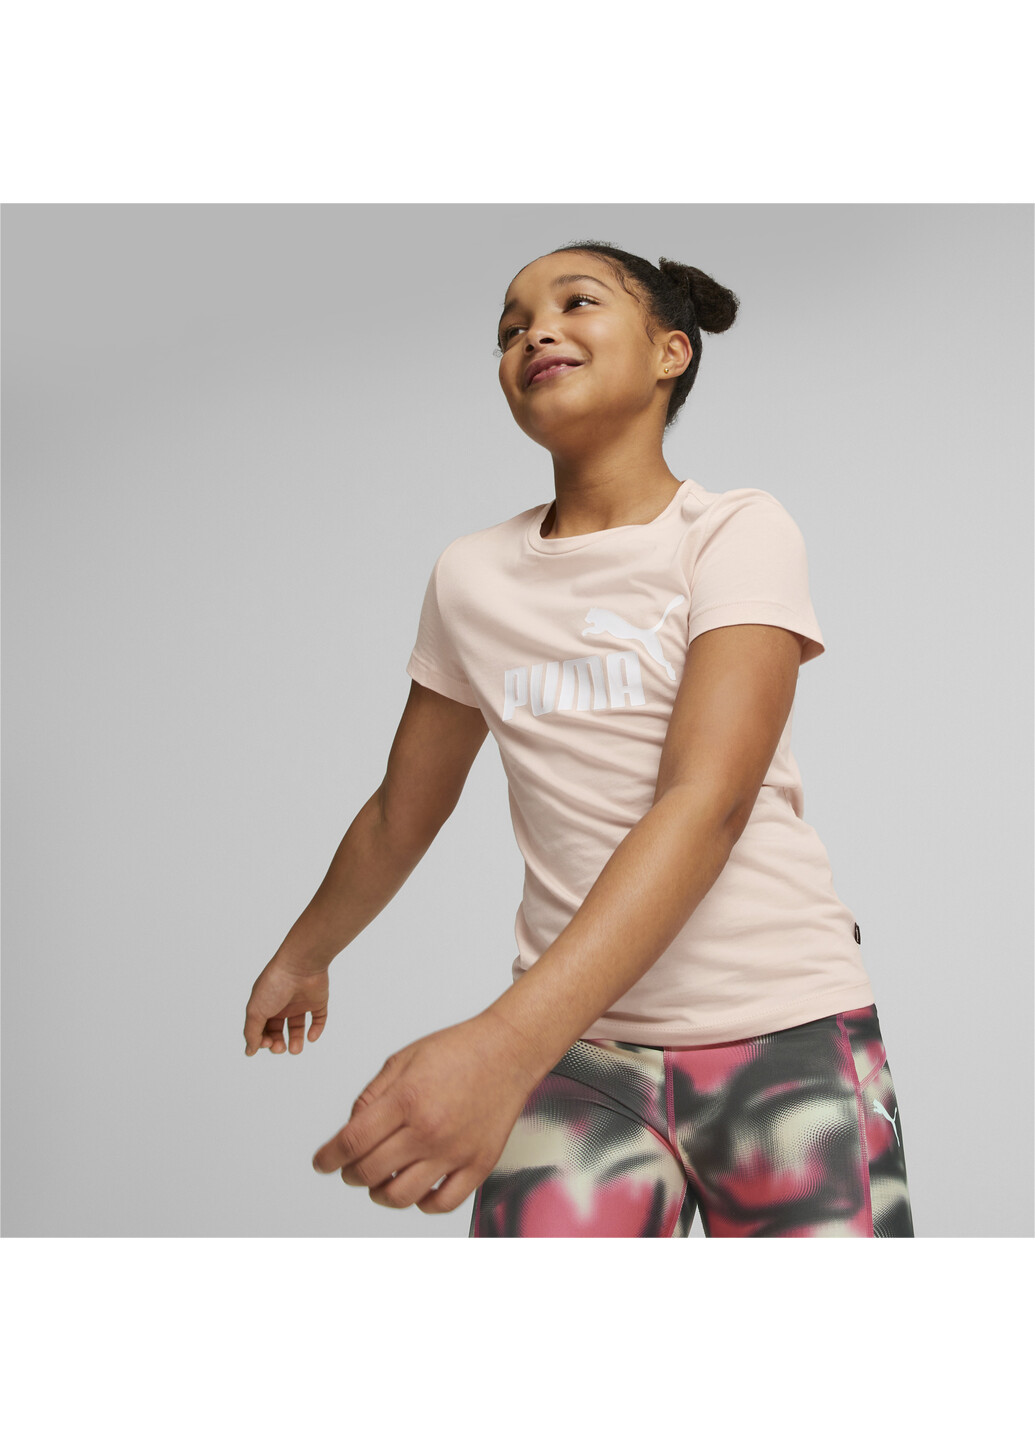 Розовая демисезонная детская футболка essentials logo youth tee Puma